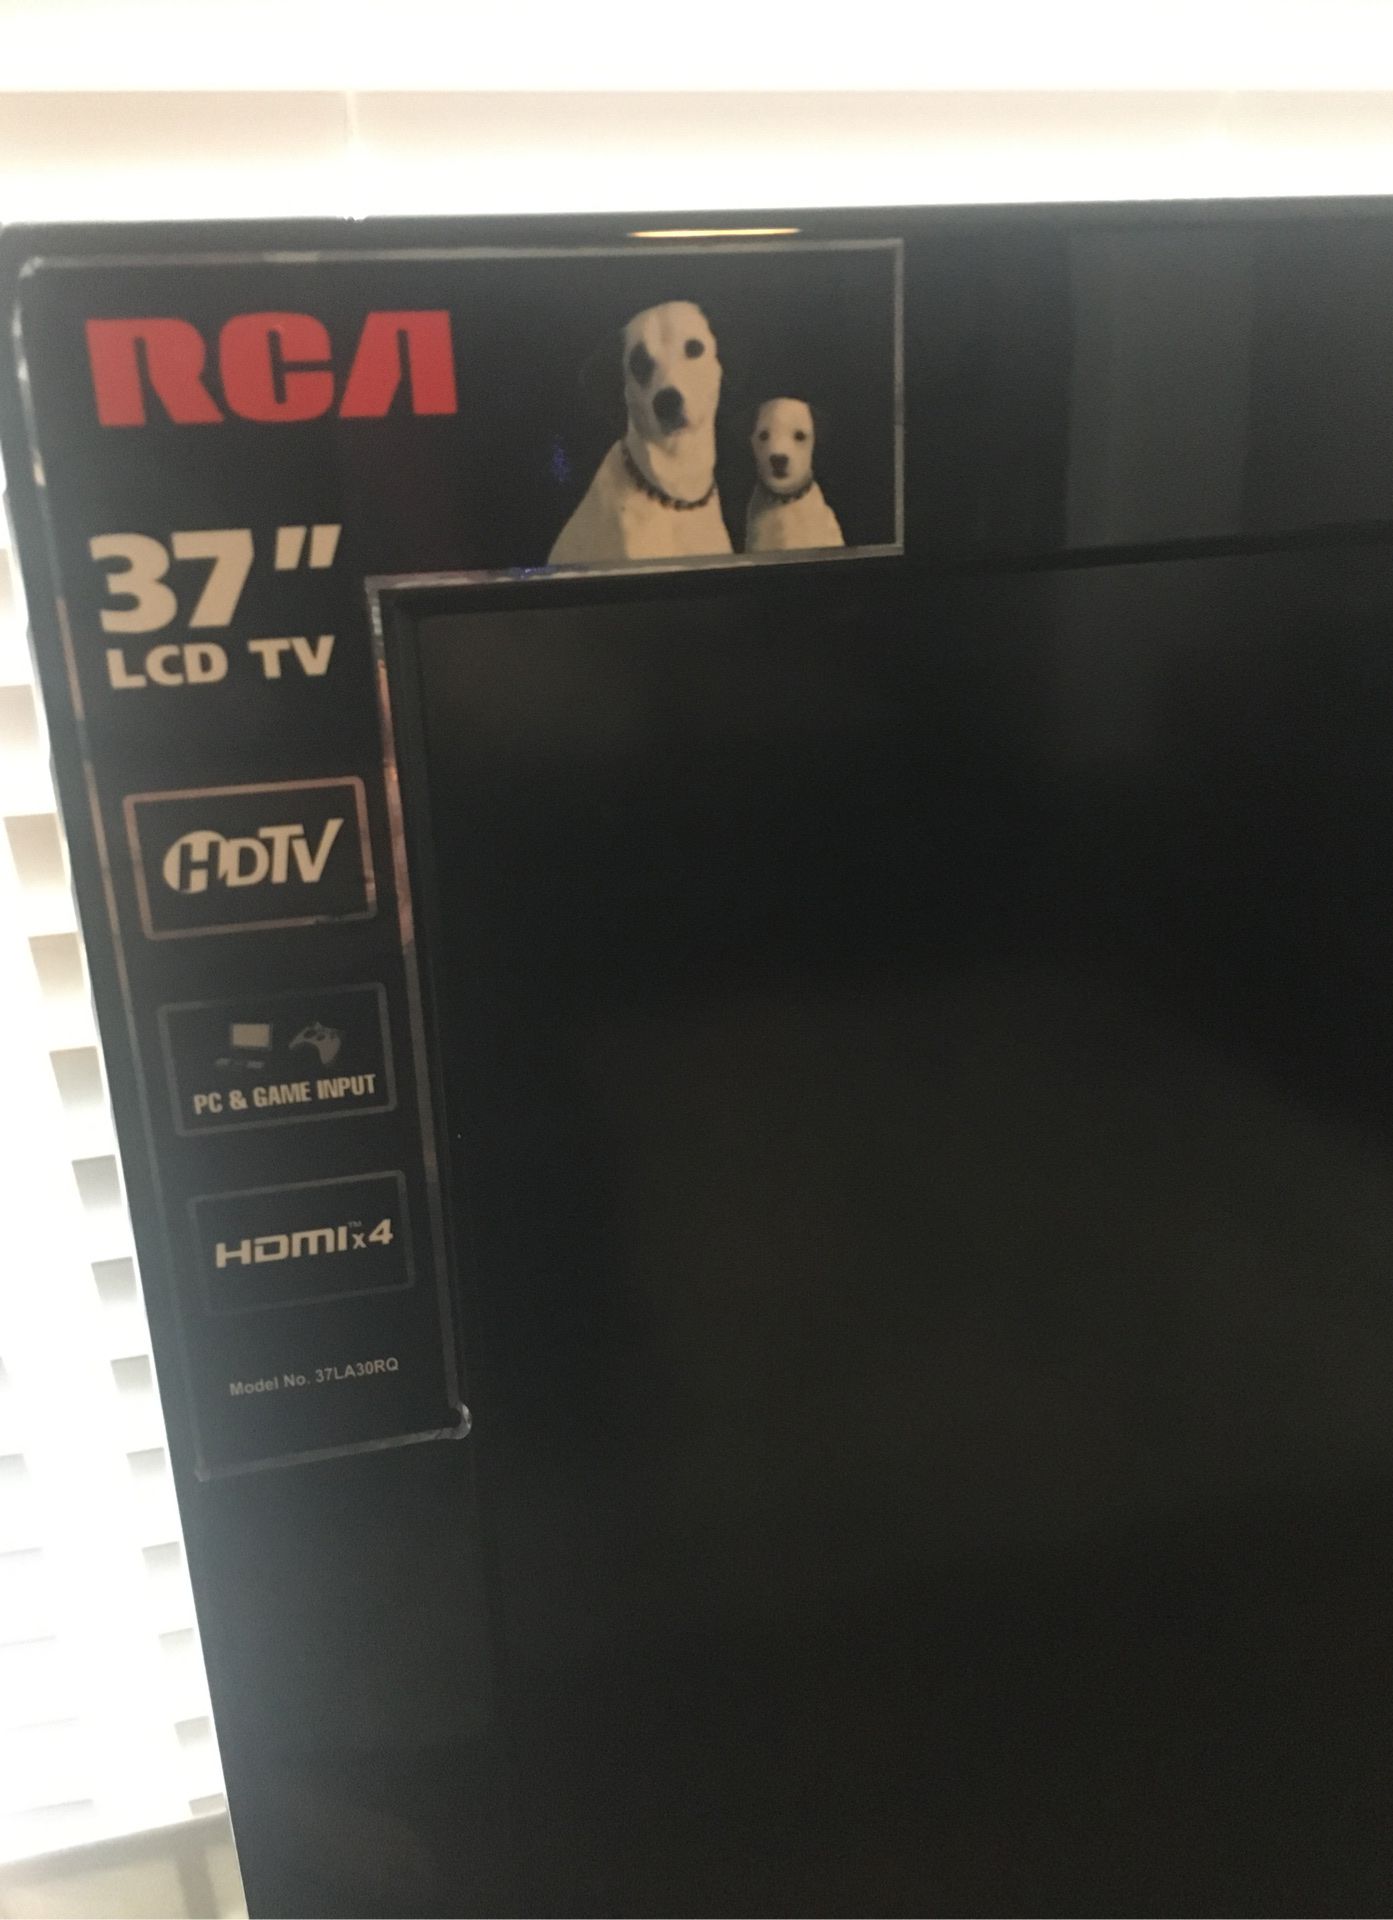 37” RCA LCD TV Hdmi x4